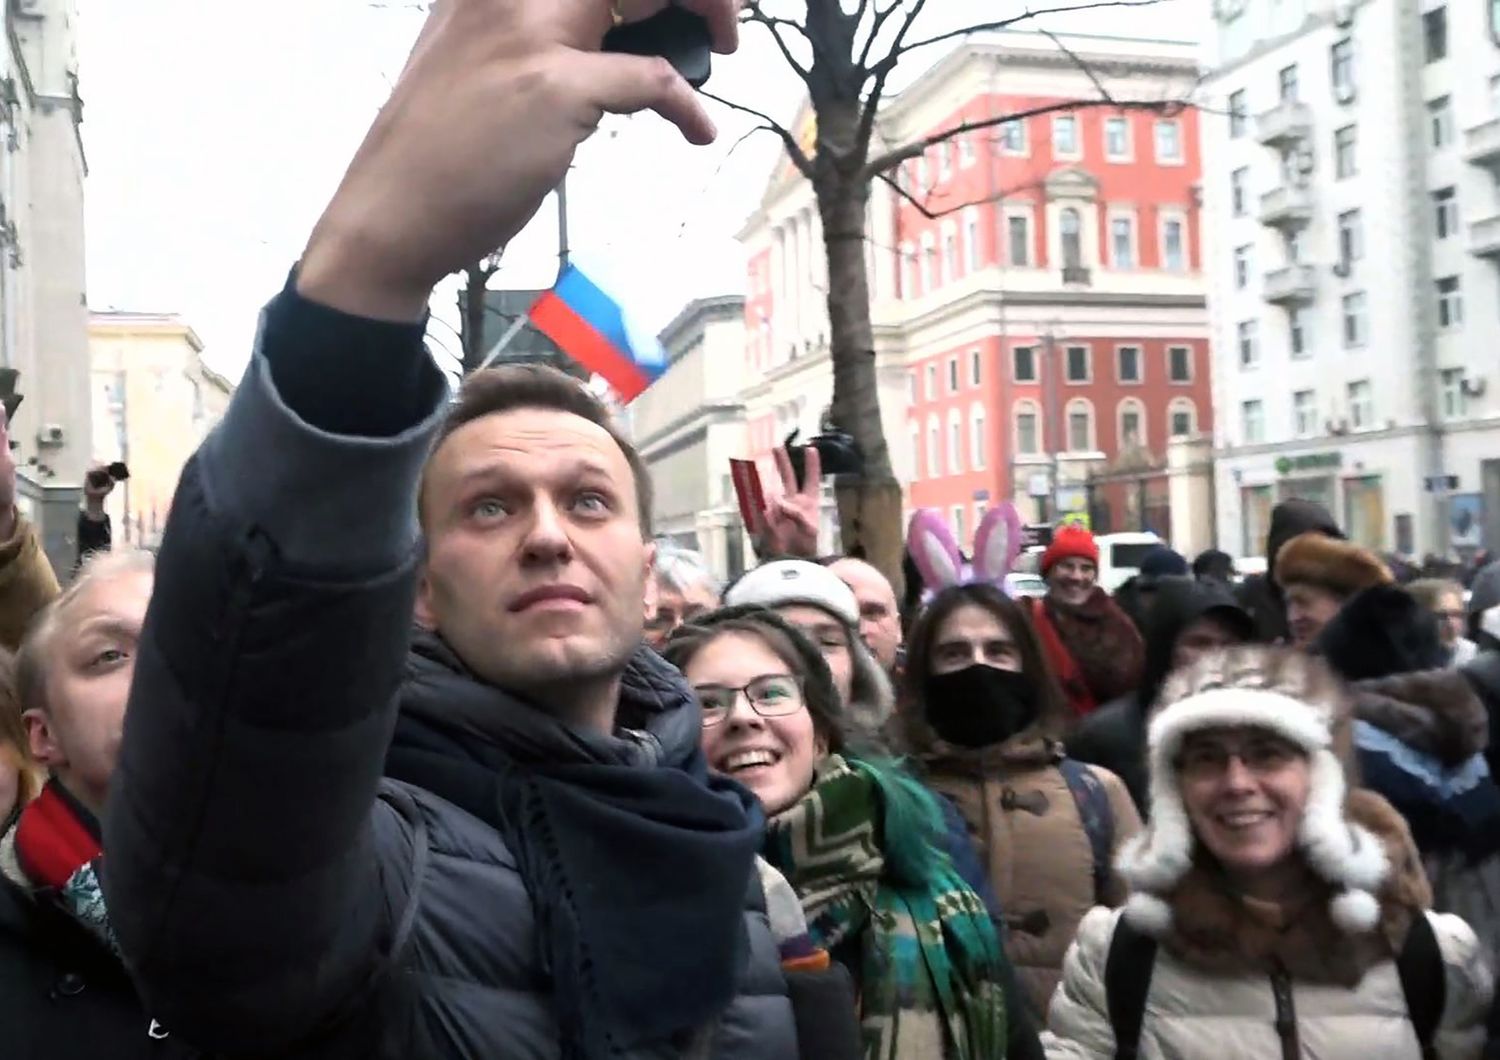 Rilasciato Navalny dopo le proteste a Mosca. 250 i fermi